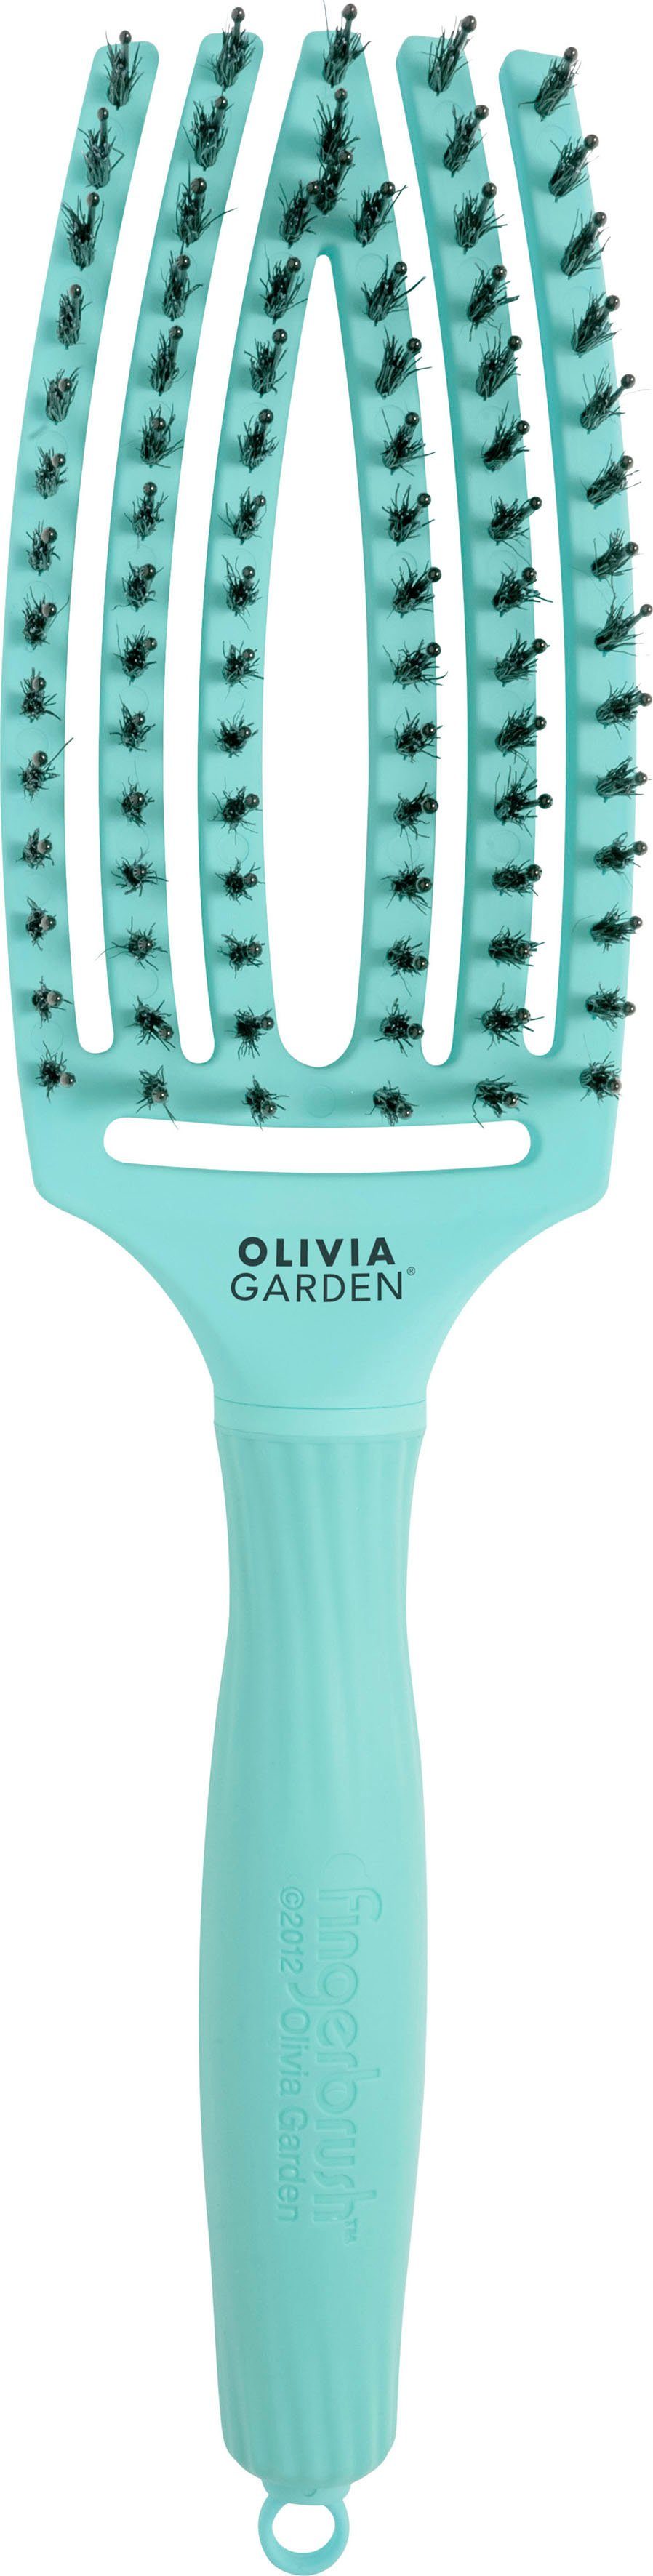 OLIVIA GARDEN Haarbürste Fingerbrush zur Ideal Entwirren Glätten, Combo zum und Medium, Kopfhautmassage